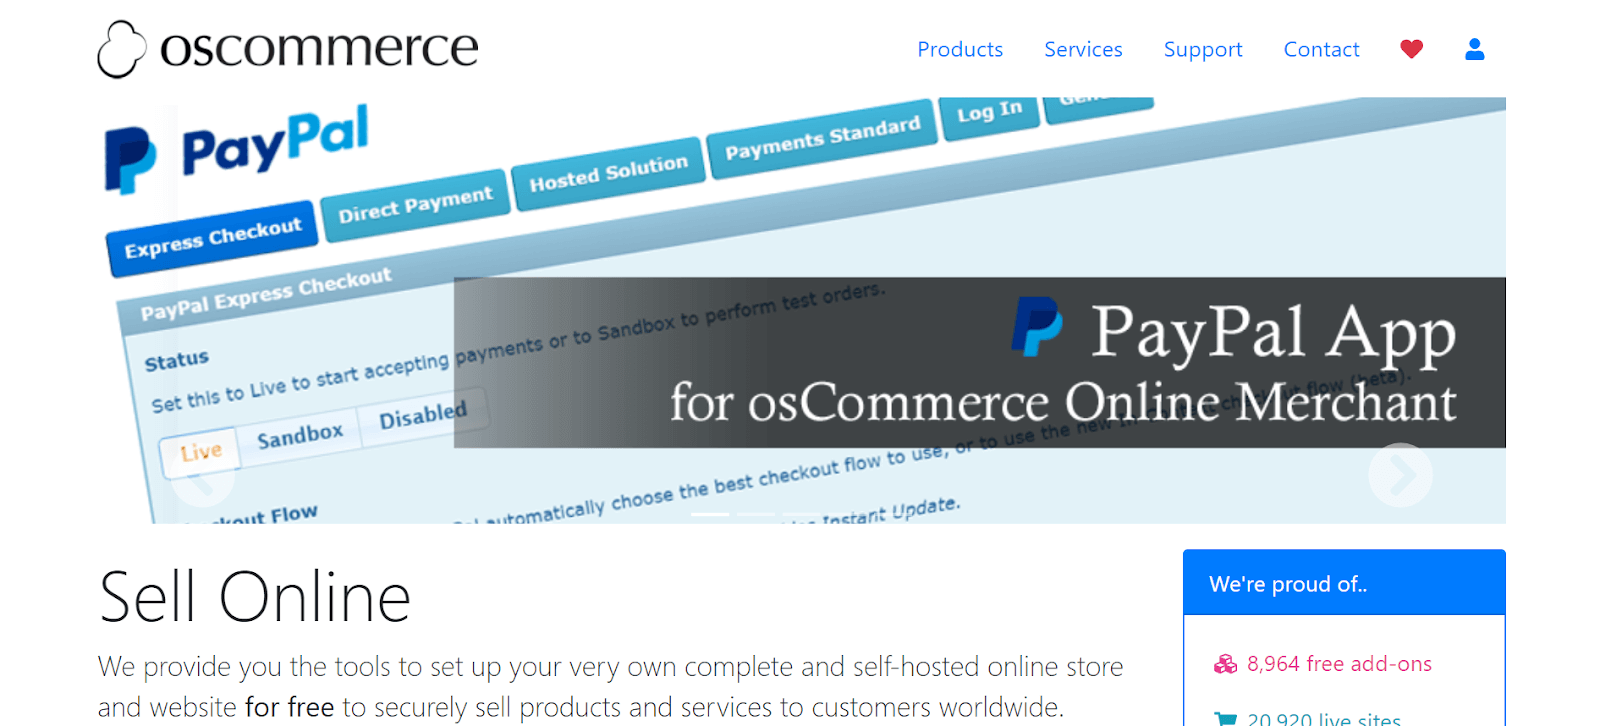 osCommerce-Best-eCommerce-tools